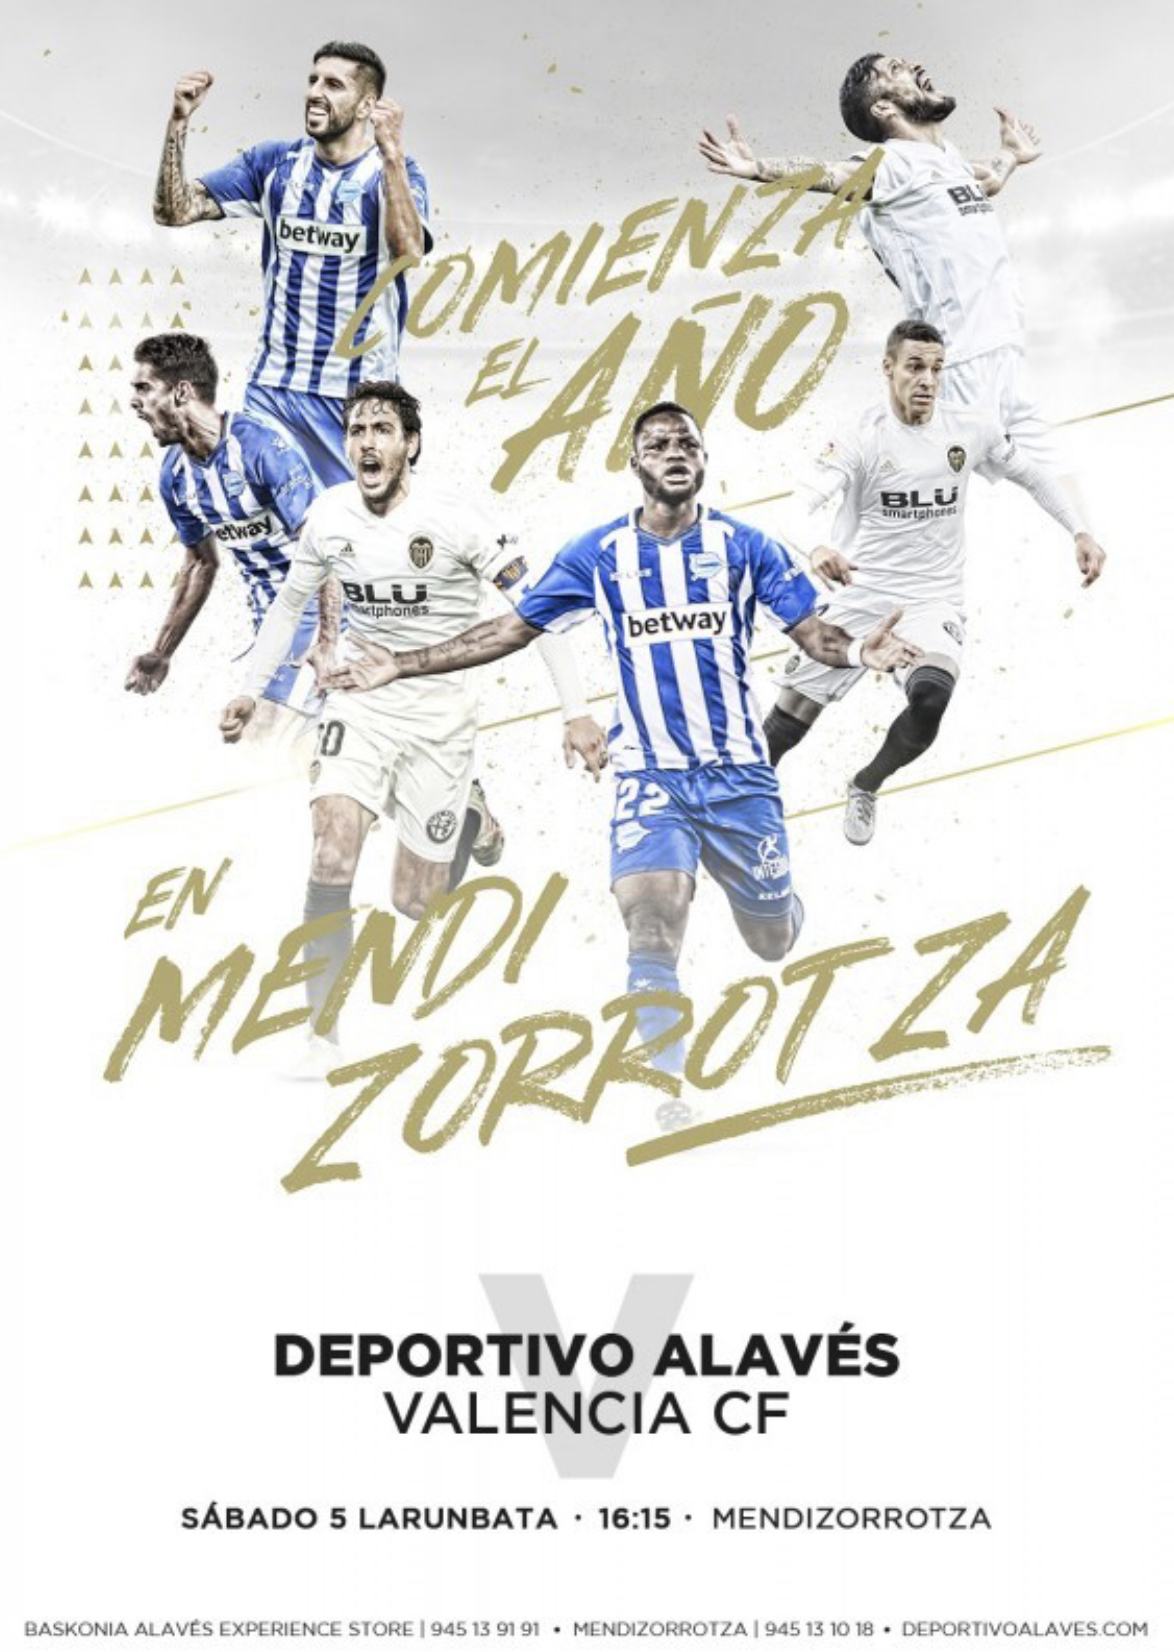 Equipo que renovó plaza de forma anticipada para la temporada 18/19 y que por ello ha resultado premiado con dos entradas para asistir en directo y de forma gratuita al encuentro de Fútbol de la Liga Santander, entre Deportivo Alavés y Valencia FC.